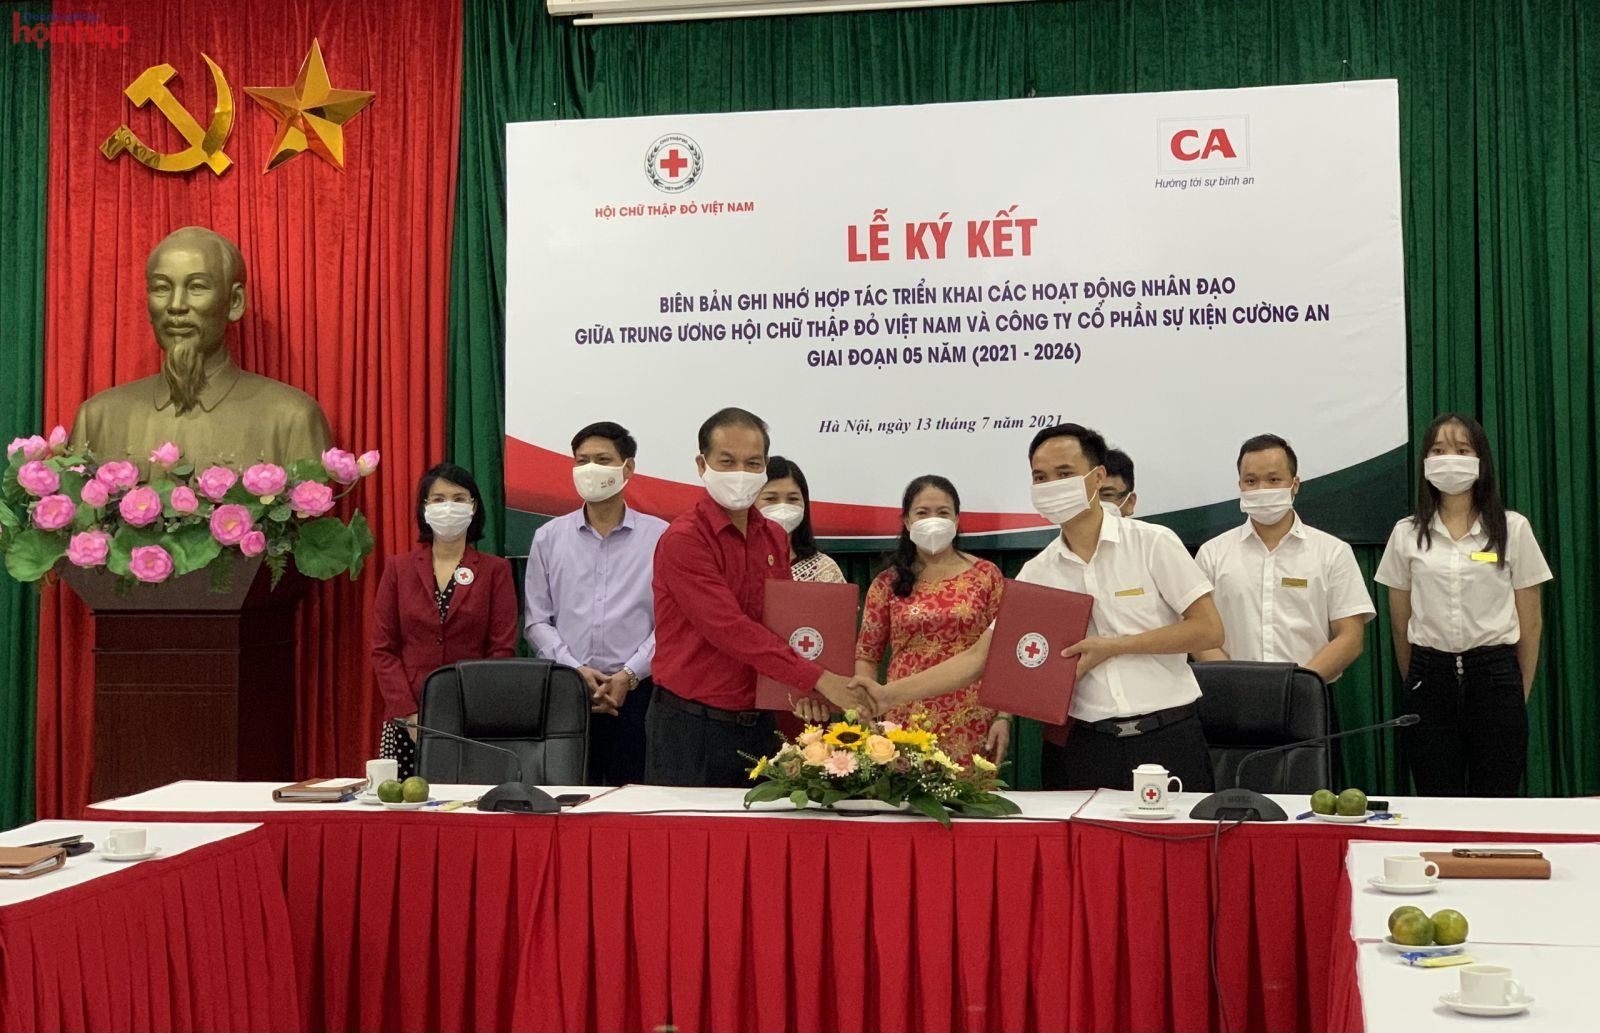 Trung ương Hội Chữ thập đỏ Việt Nam ký kết Chương trình hợp tác triển khai các hoạt động nhân đạo với Công ty cổ phần sự kiện Cường An giai đoạn 05 năm